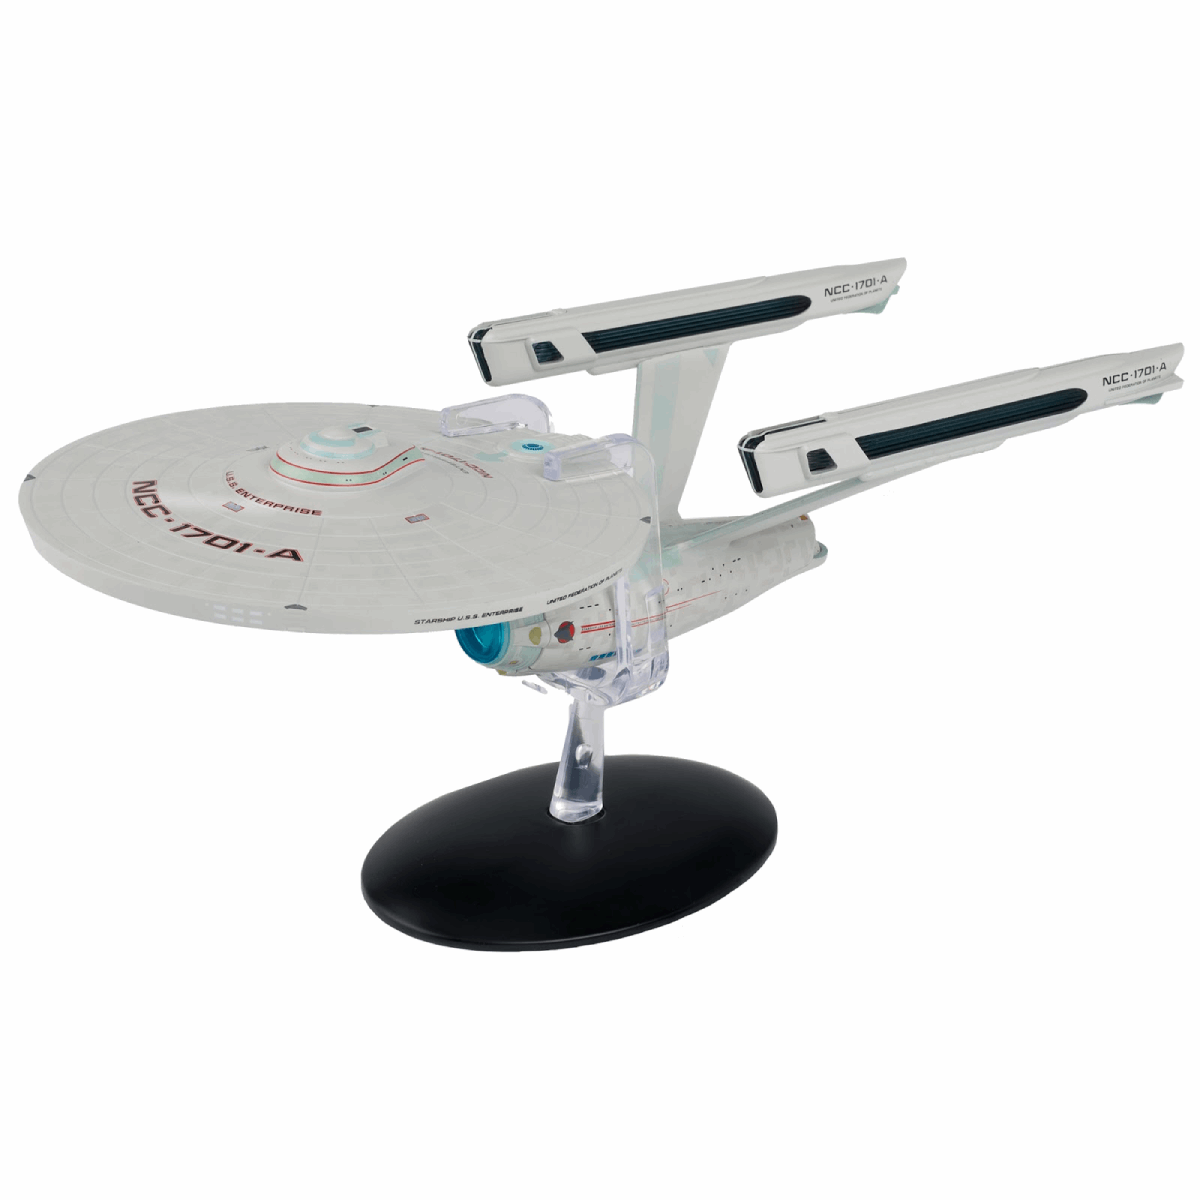 #06 U.S.S. Enterprise NCC-1701-A (Constitution-class refit) XL EDITION Die-cast Model Ship (Eaglemoss / Star Trek)